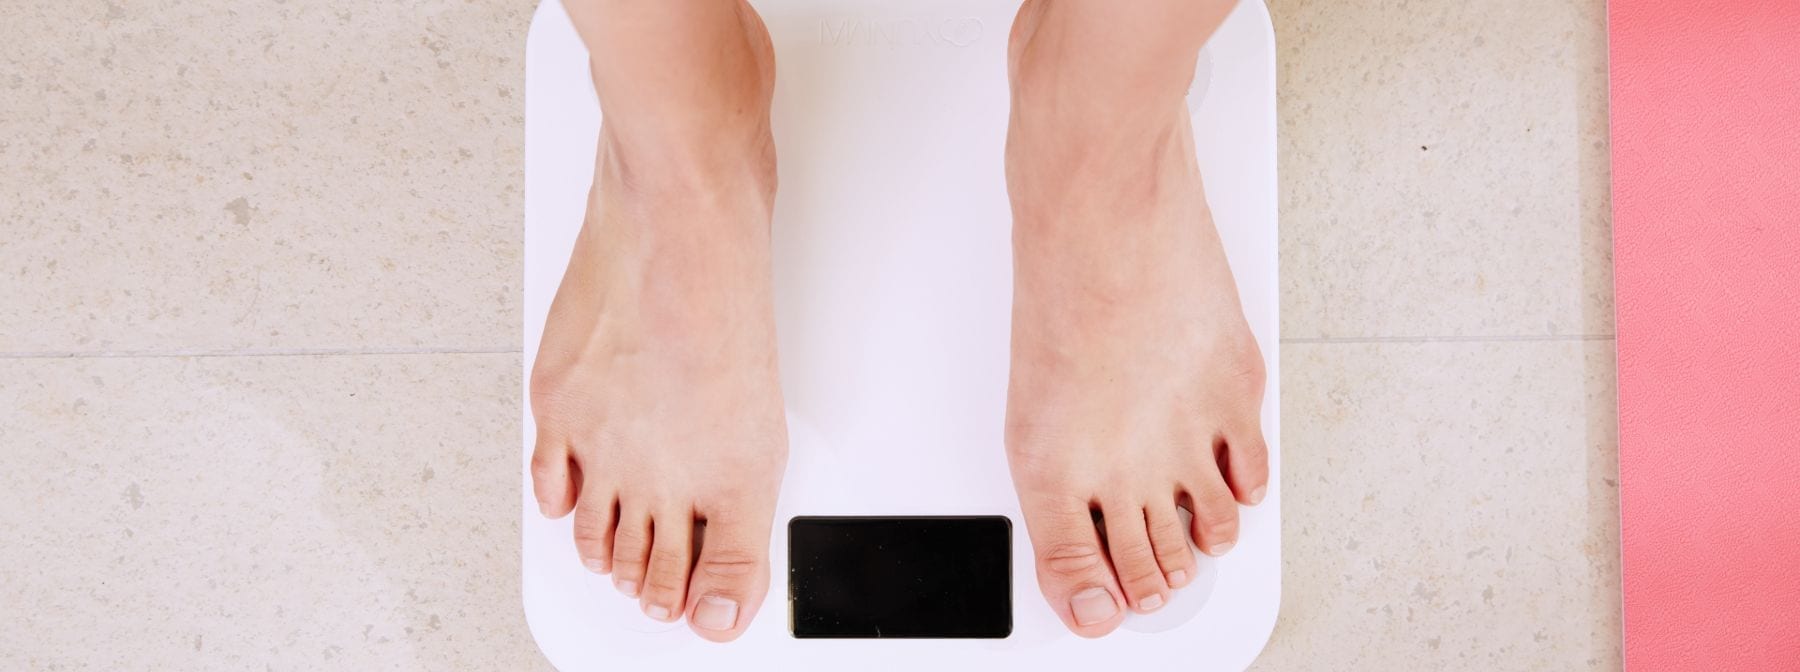 Hurtigt vægttab | Hvorfor ekstreme diæter kan være farlige